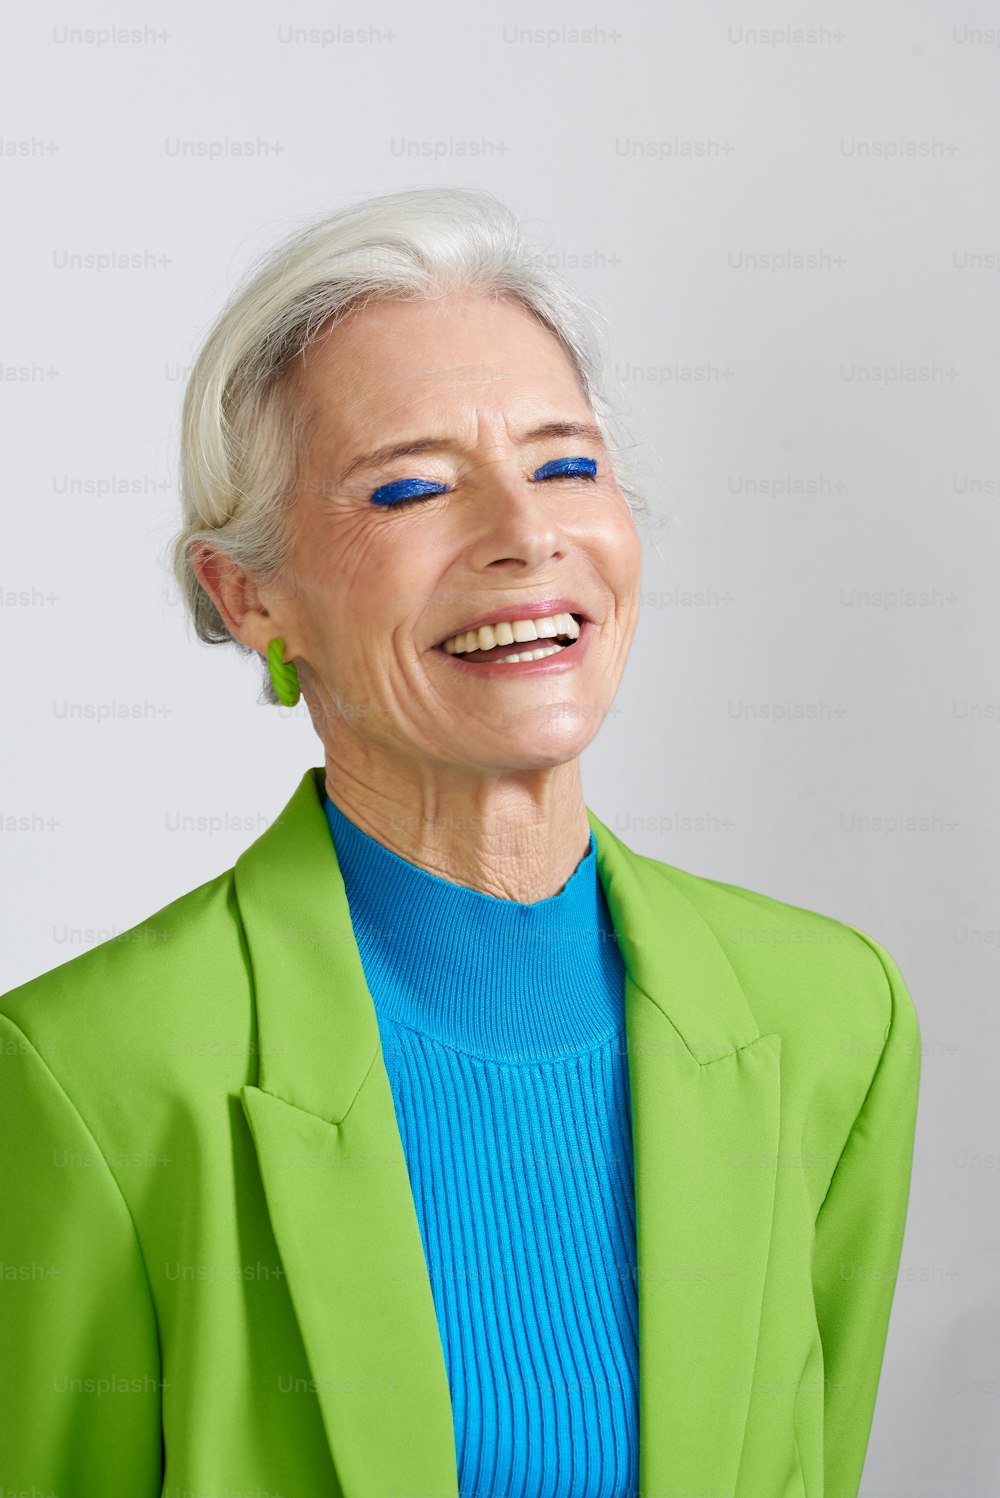 Una donna con i capelli bianchi e gli occhi azzurri sorridenti